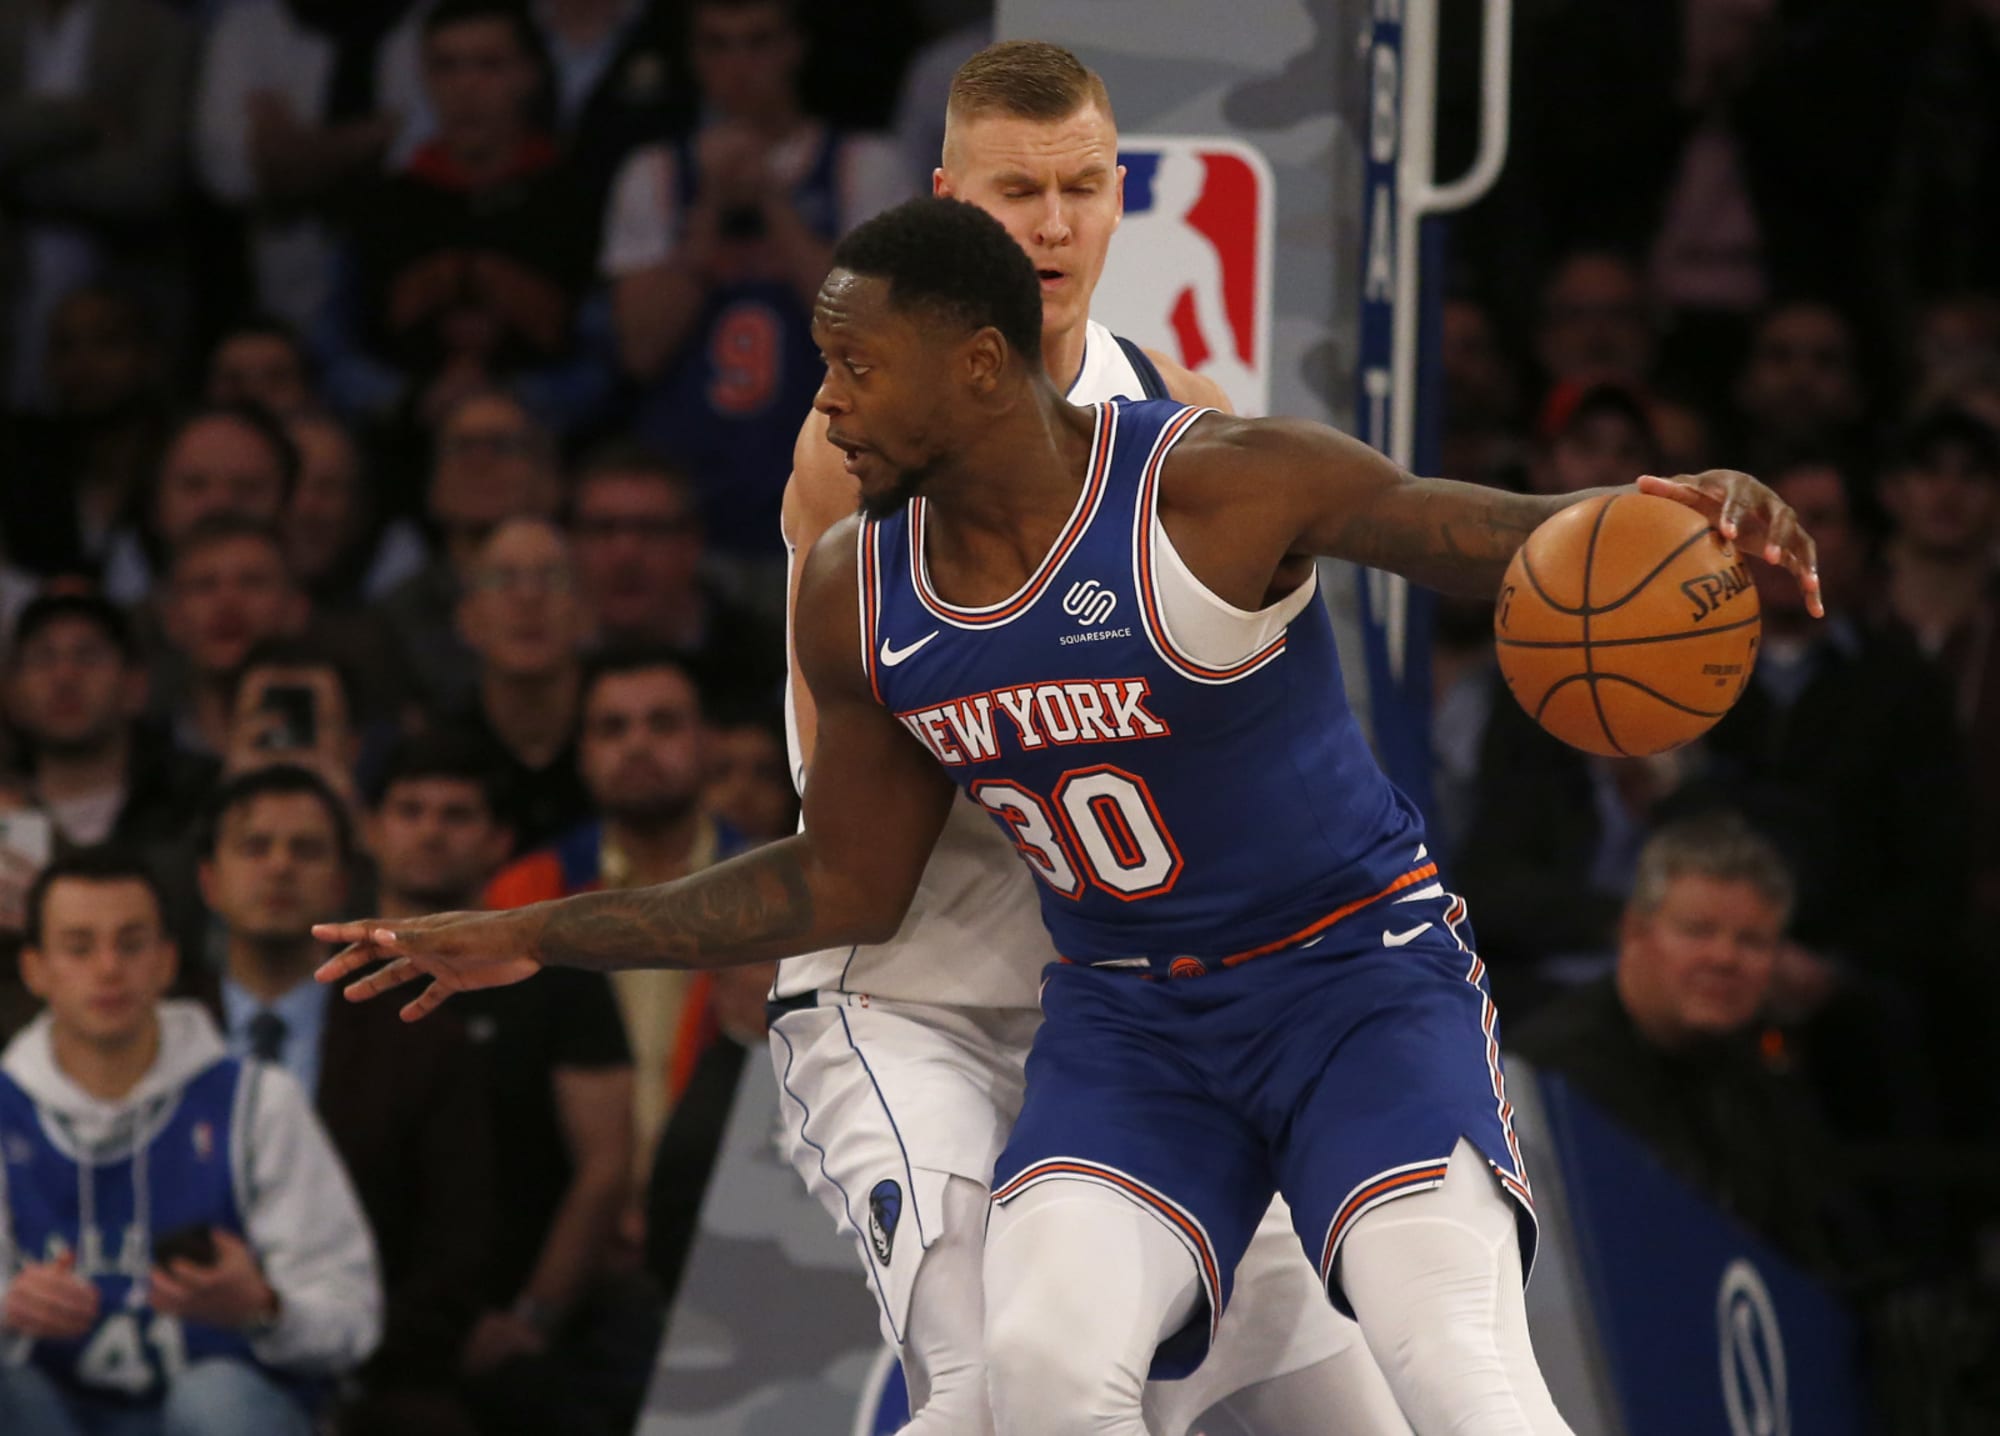 NY Knicks vs. Mavericks 3 key matchups in a heated game